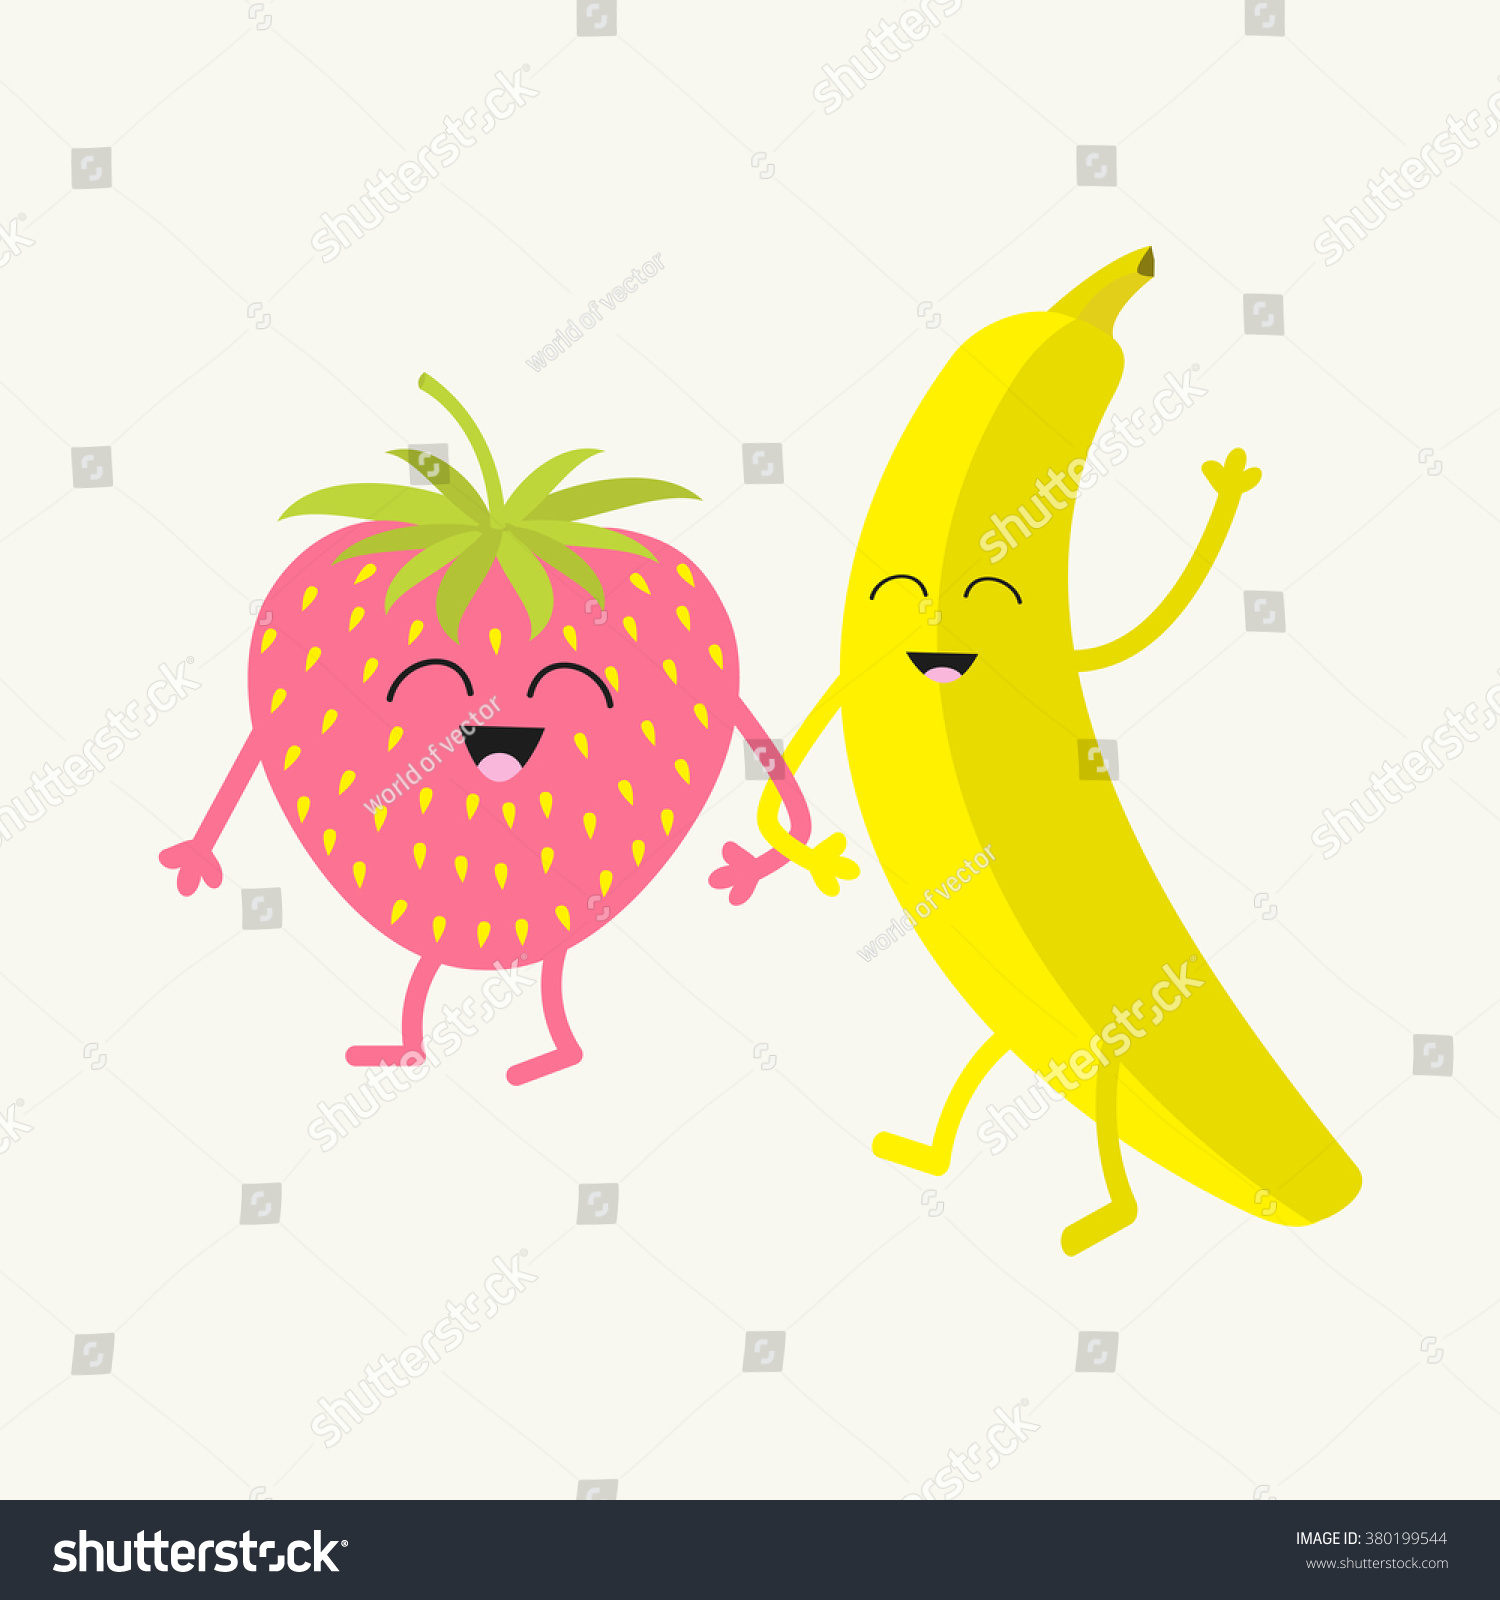 strawberry banana clipart - photo #7